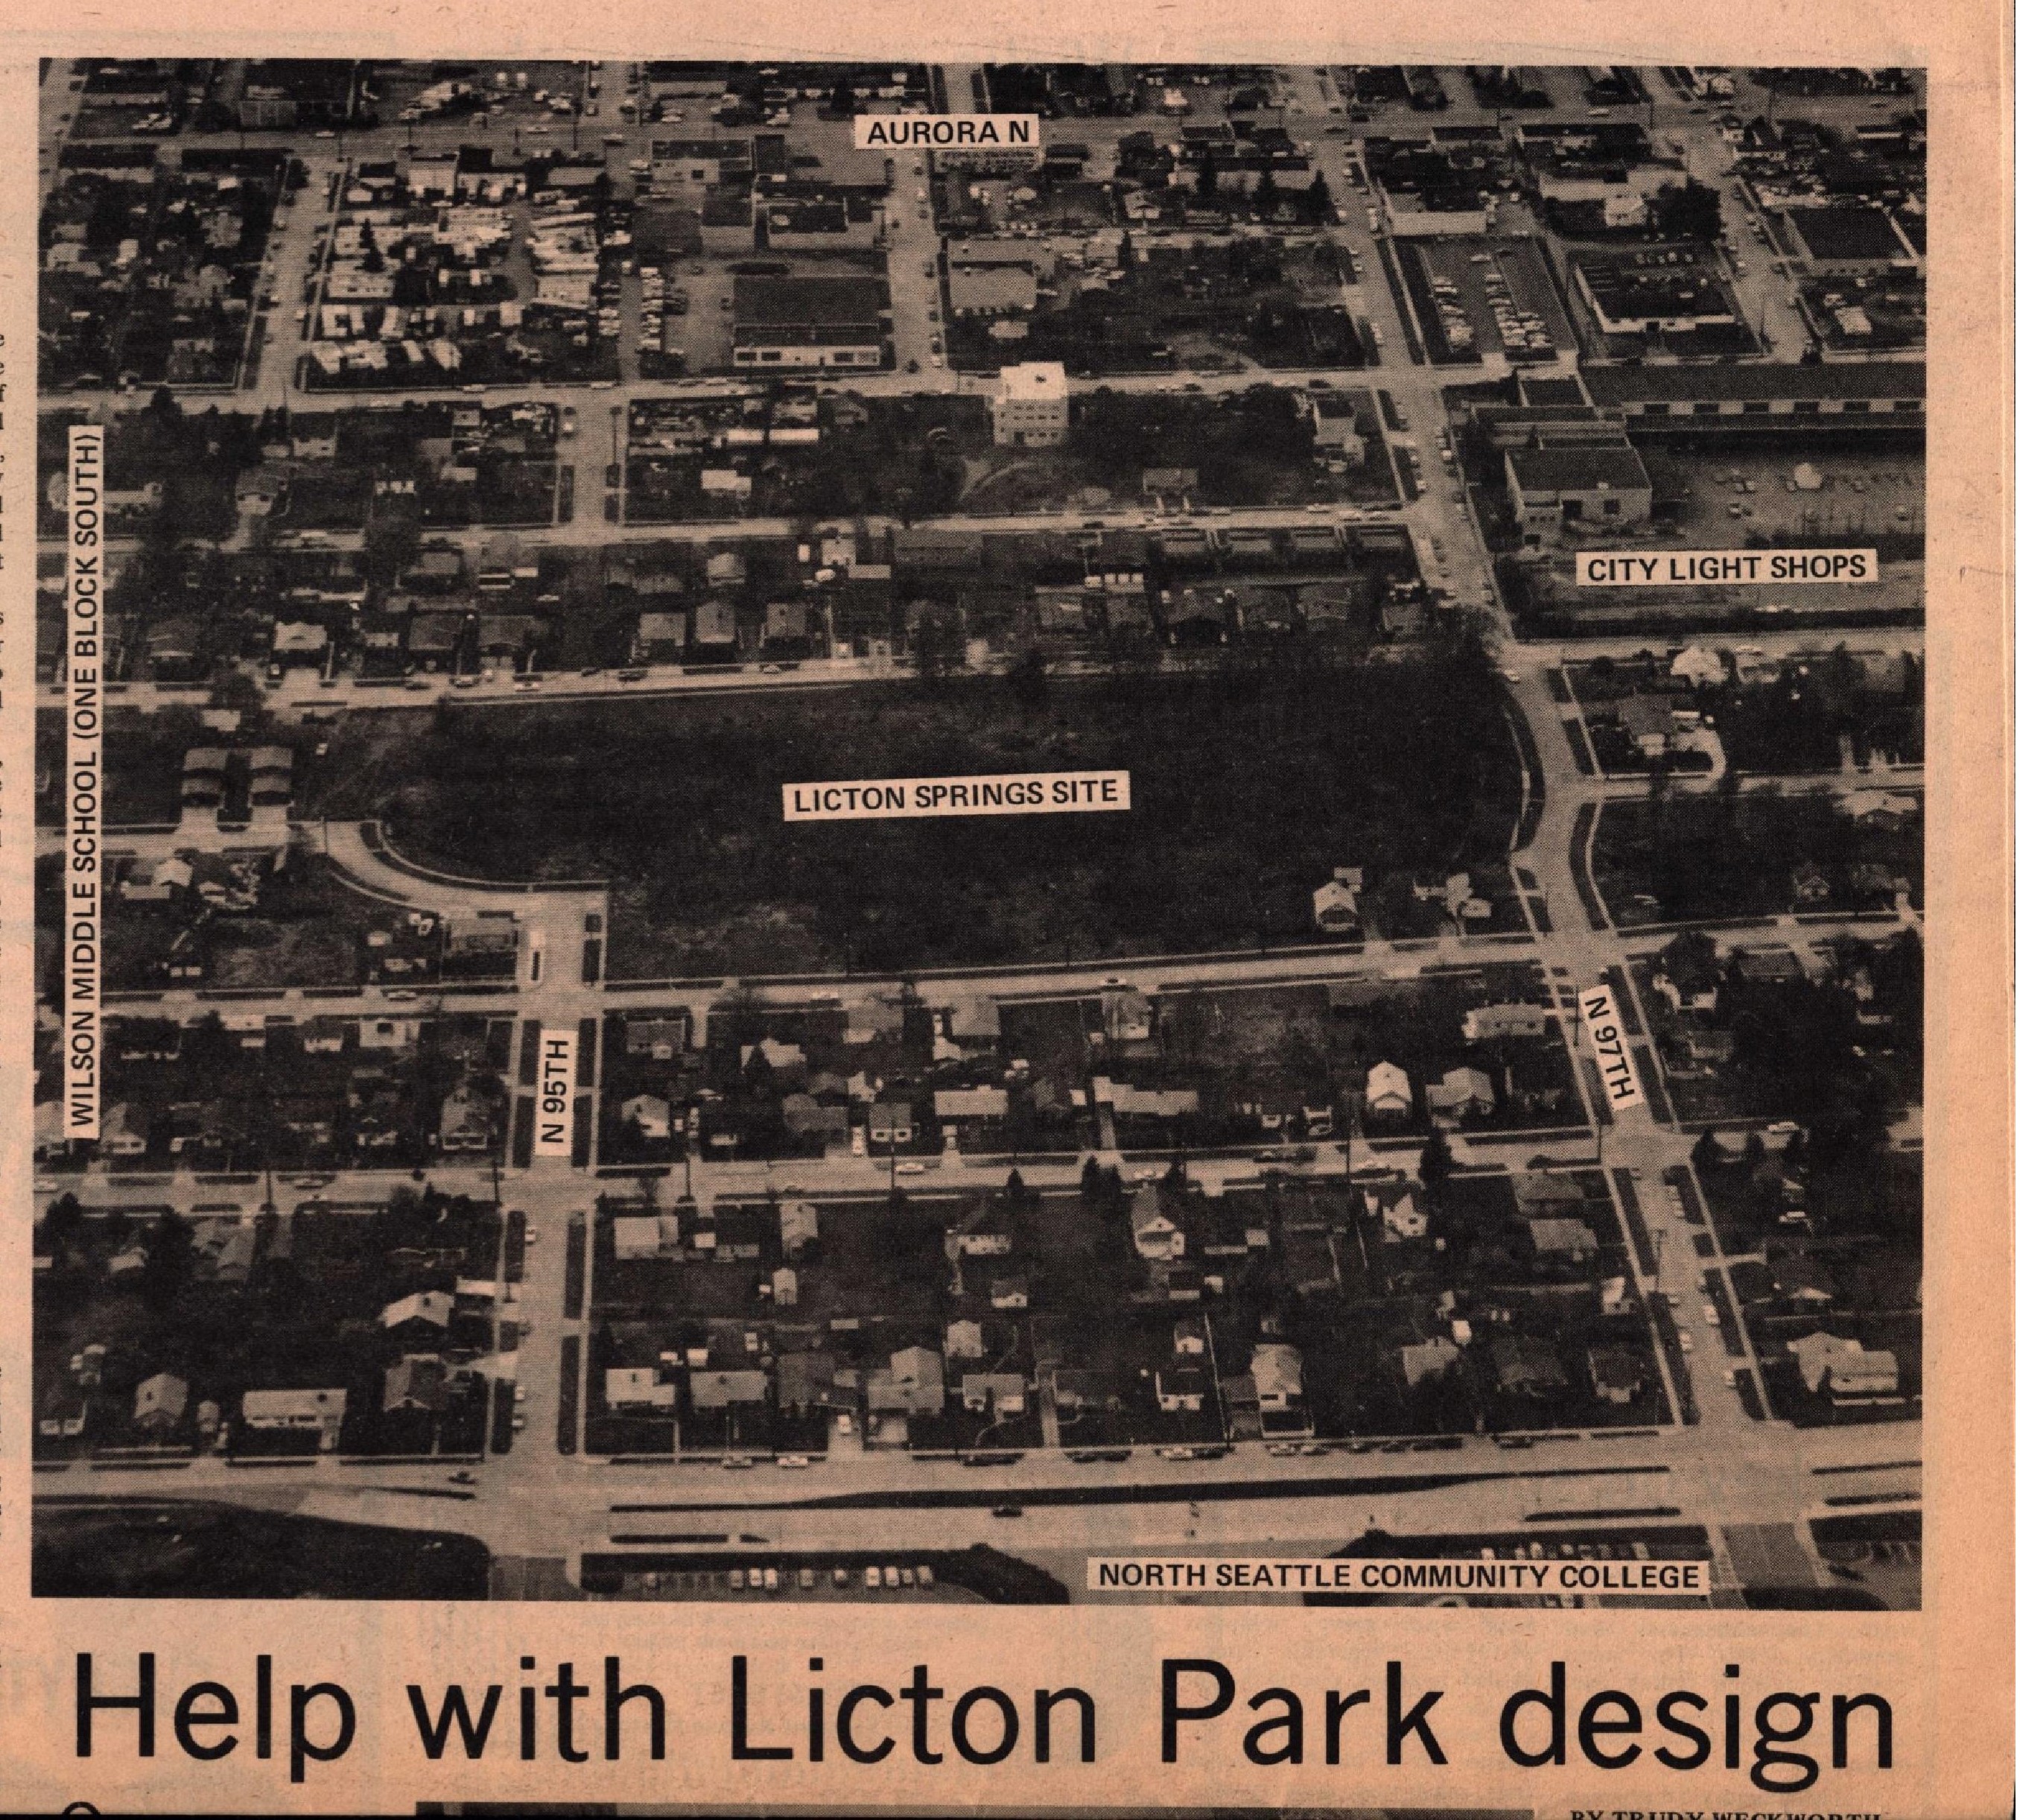 An aerial shot of Licton Springs circa 1974